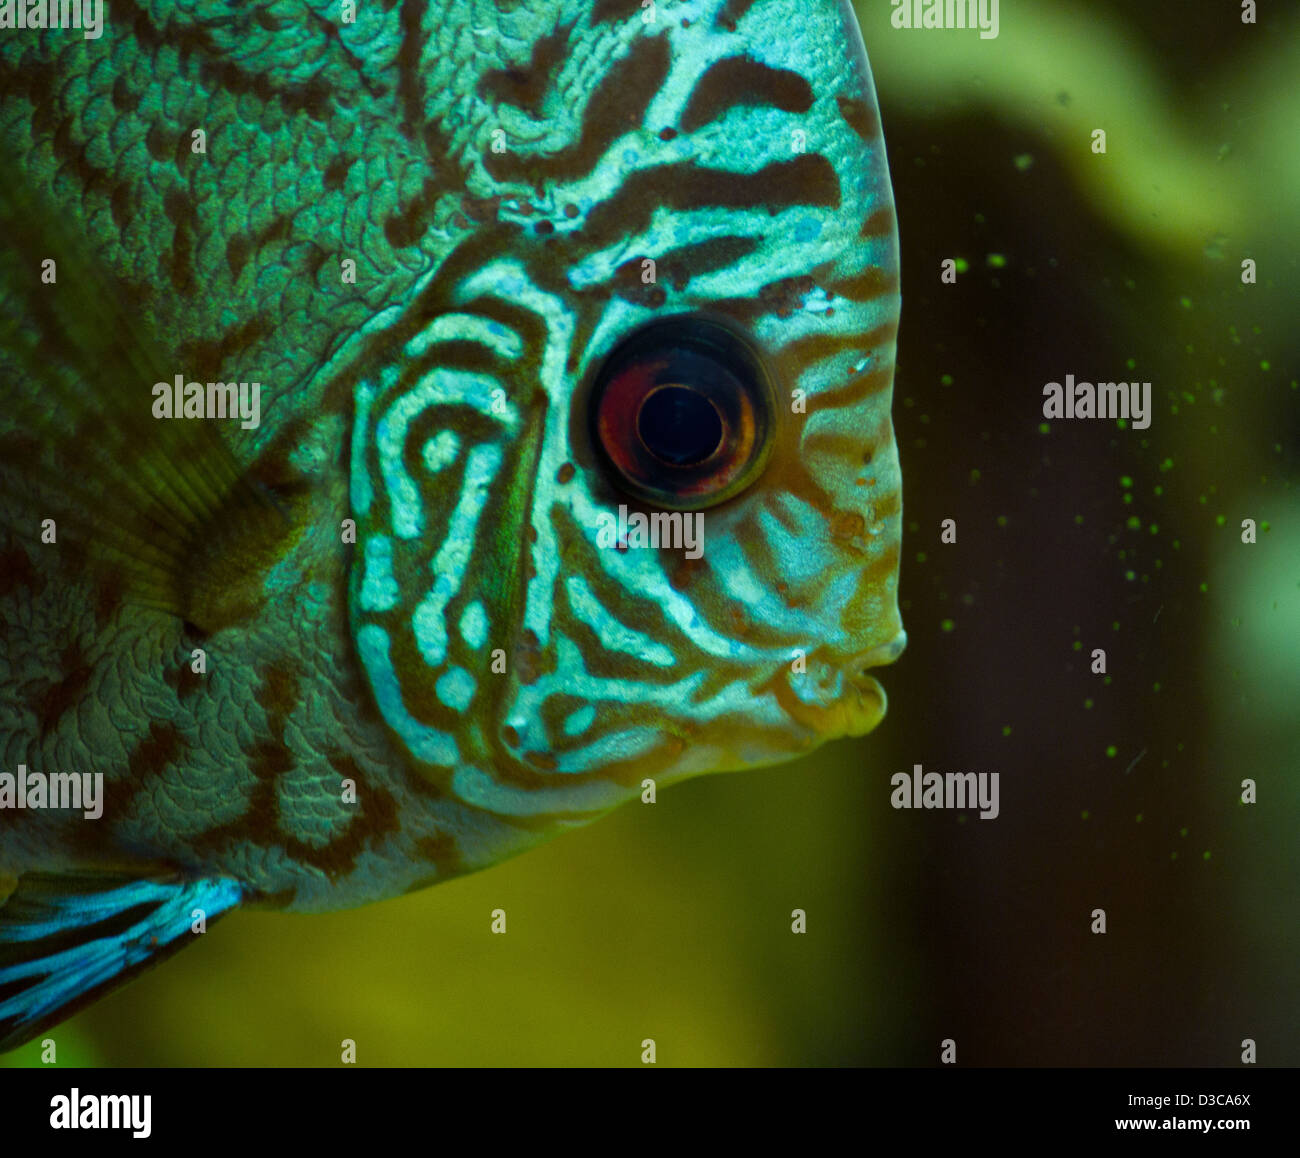 Superb Discus fish portrait (Symphysodon aequifasciatu) Stock Photo